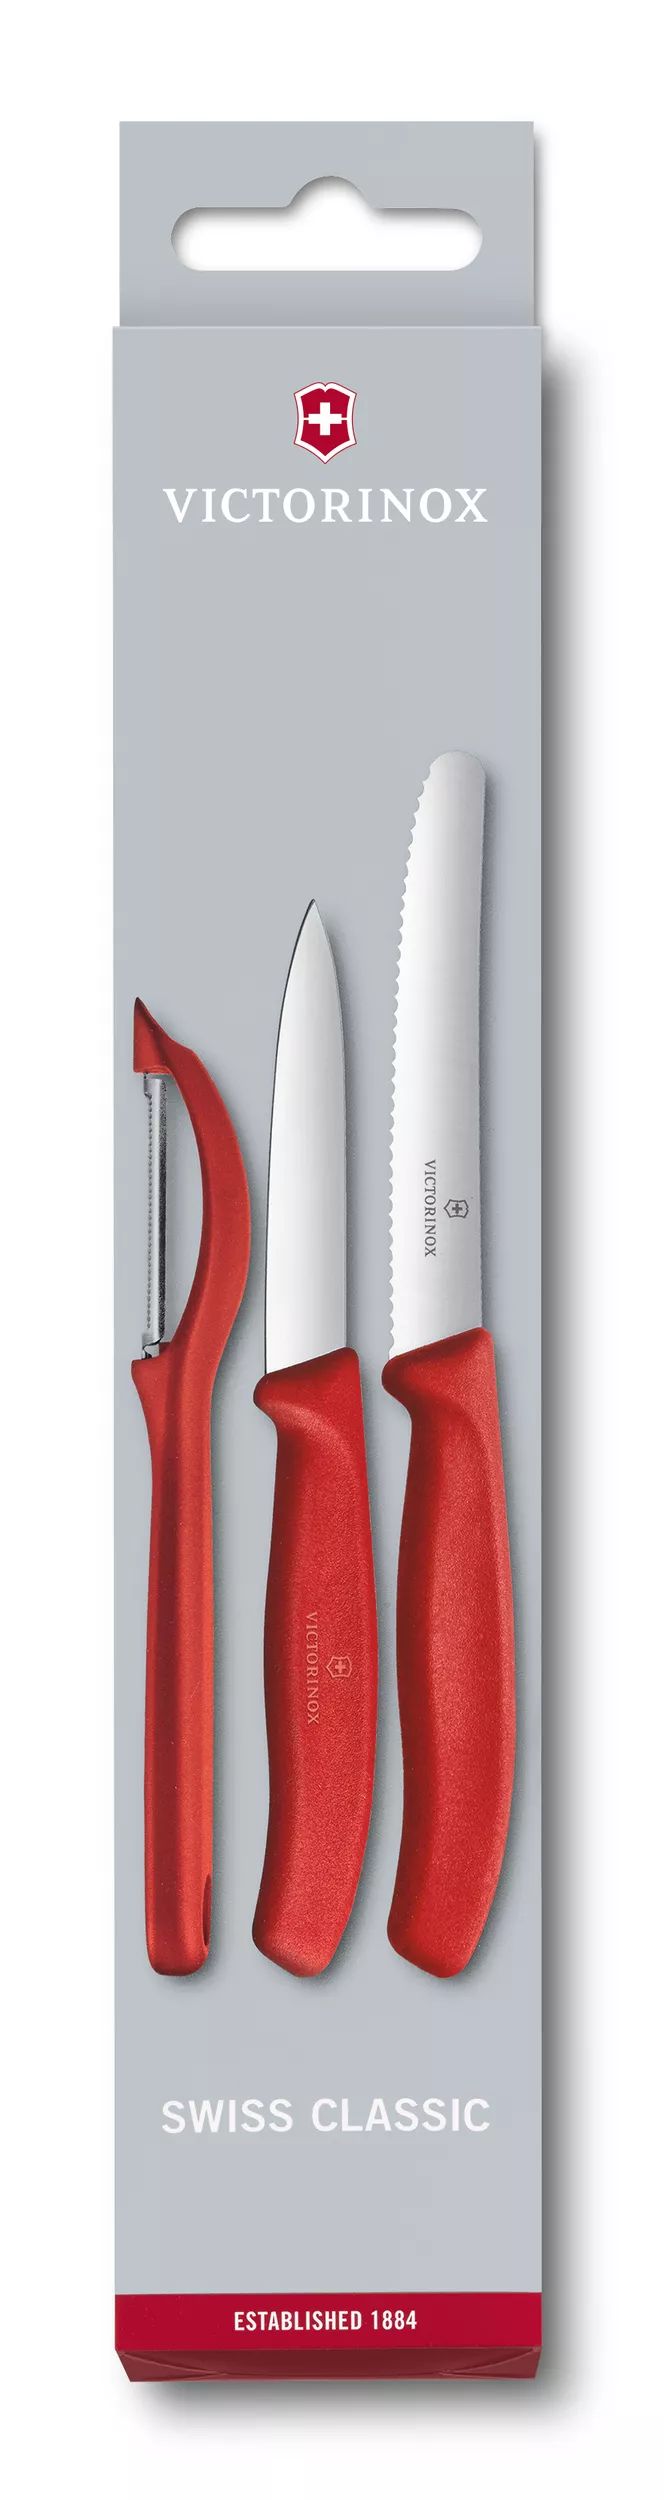 Conjunto de facas para descascar Swiss Classic com descascador, 3 peças-6.7111.31